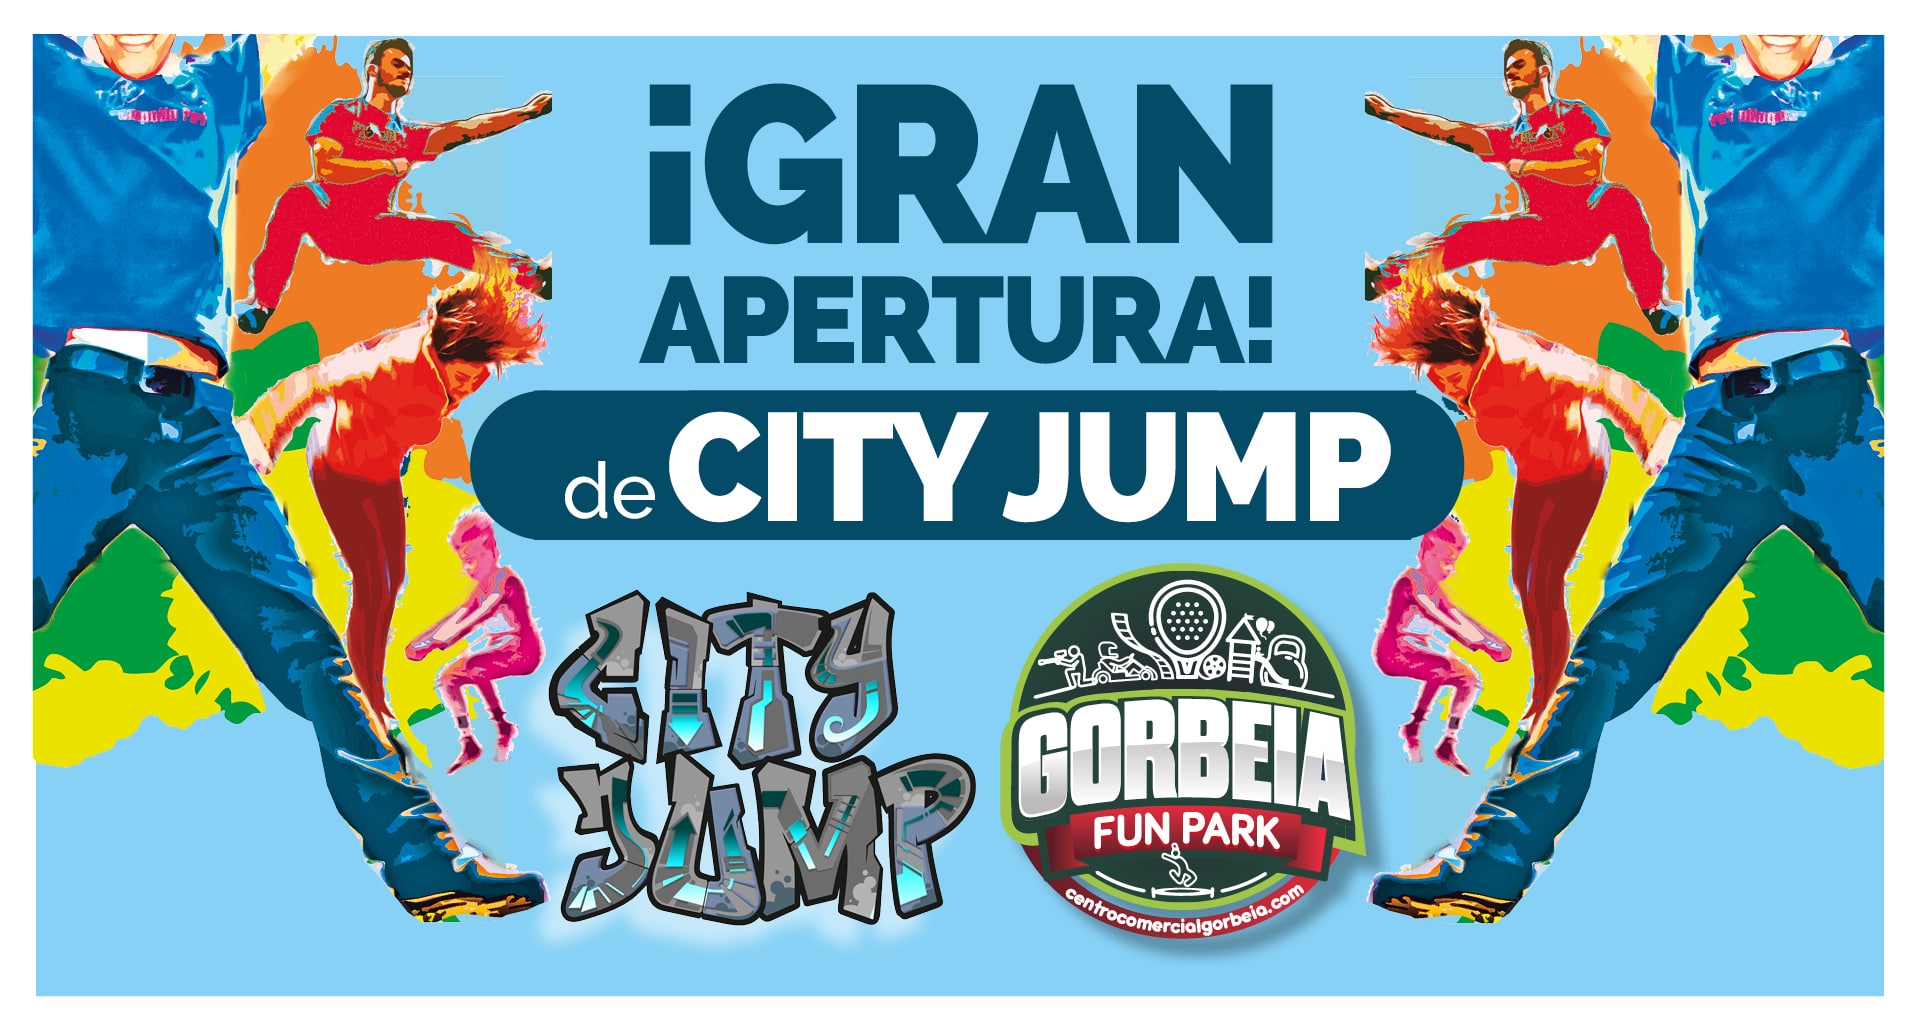 El Parque Comercial Gorbeia inaugura el nuevo Trampolín Park “City Jump” 